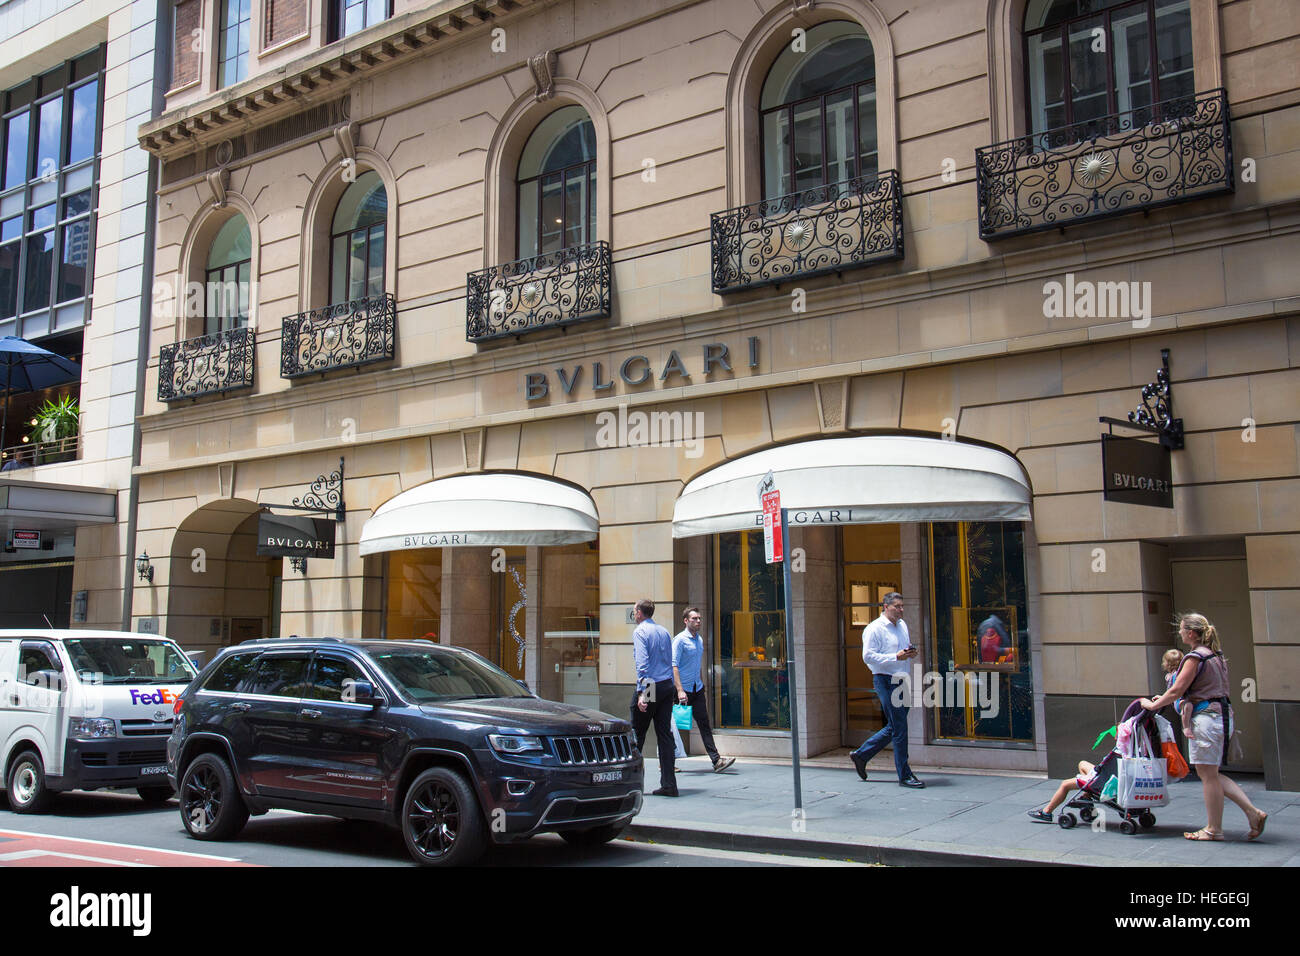 Façade de l'entrée du magasin Bvlgari Castlereagh street, dans le centre-ville de Sydney, Australie. Bvlgari est une marque italienne détenue par LVMH Banque D'Images